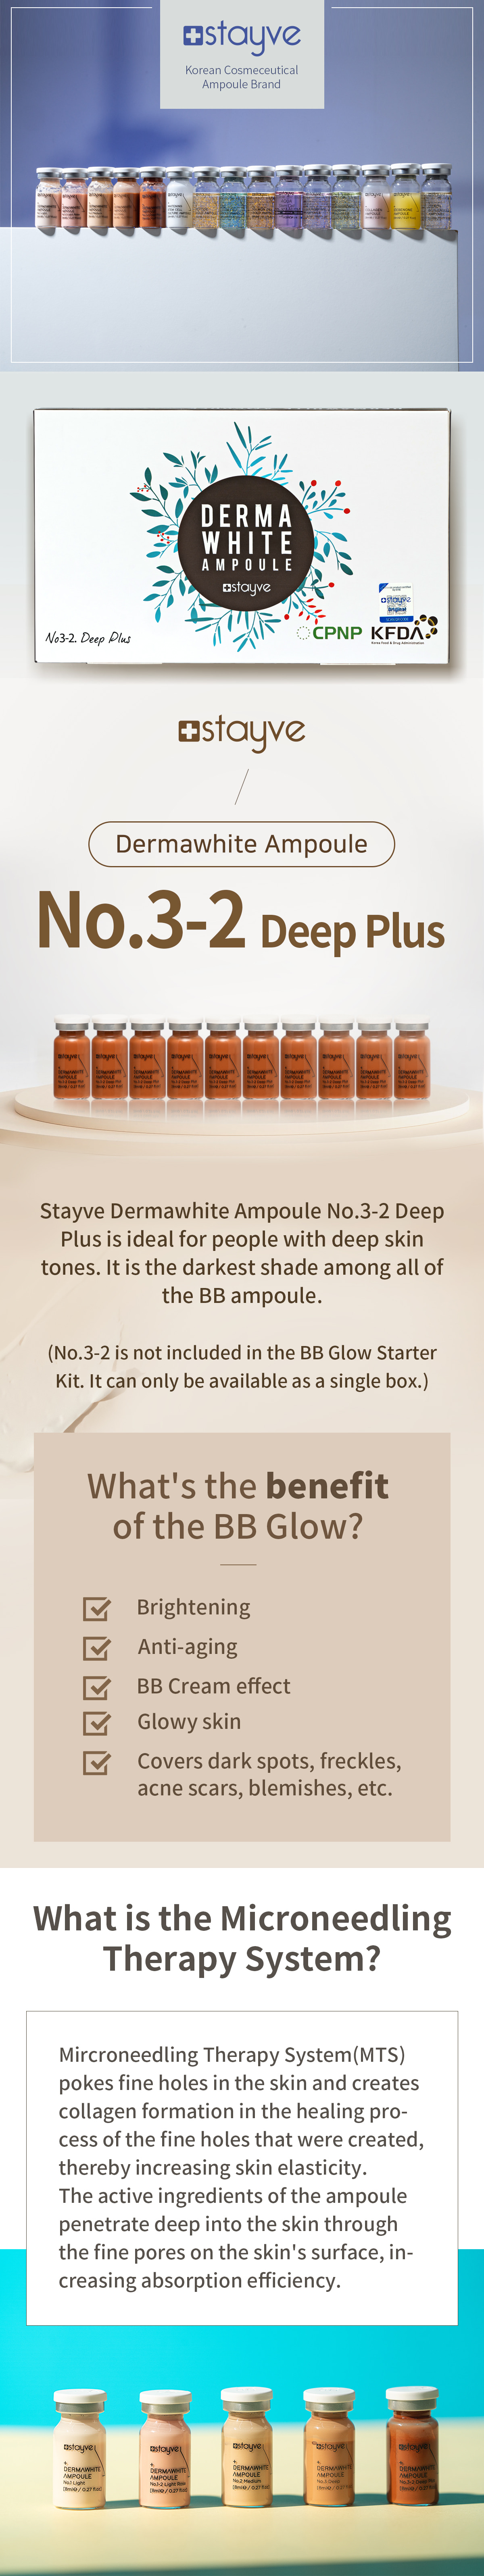 Stayve Dermawhite BB Glow Ampoule No.3-2 Deep Plus 3